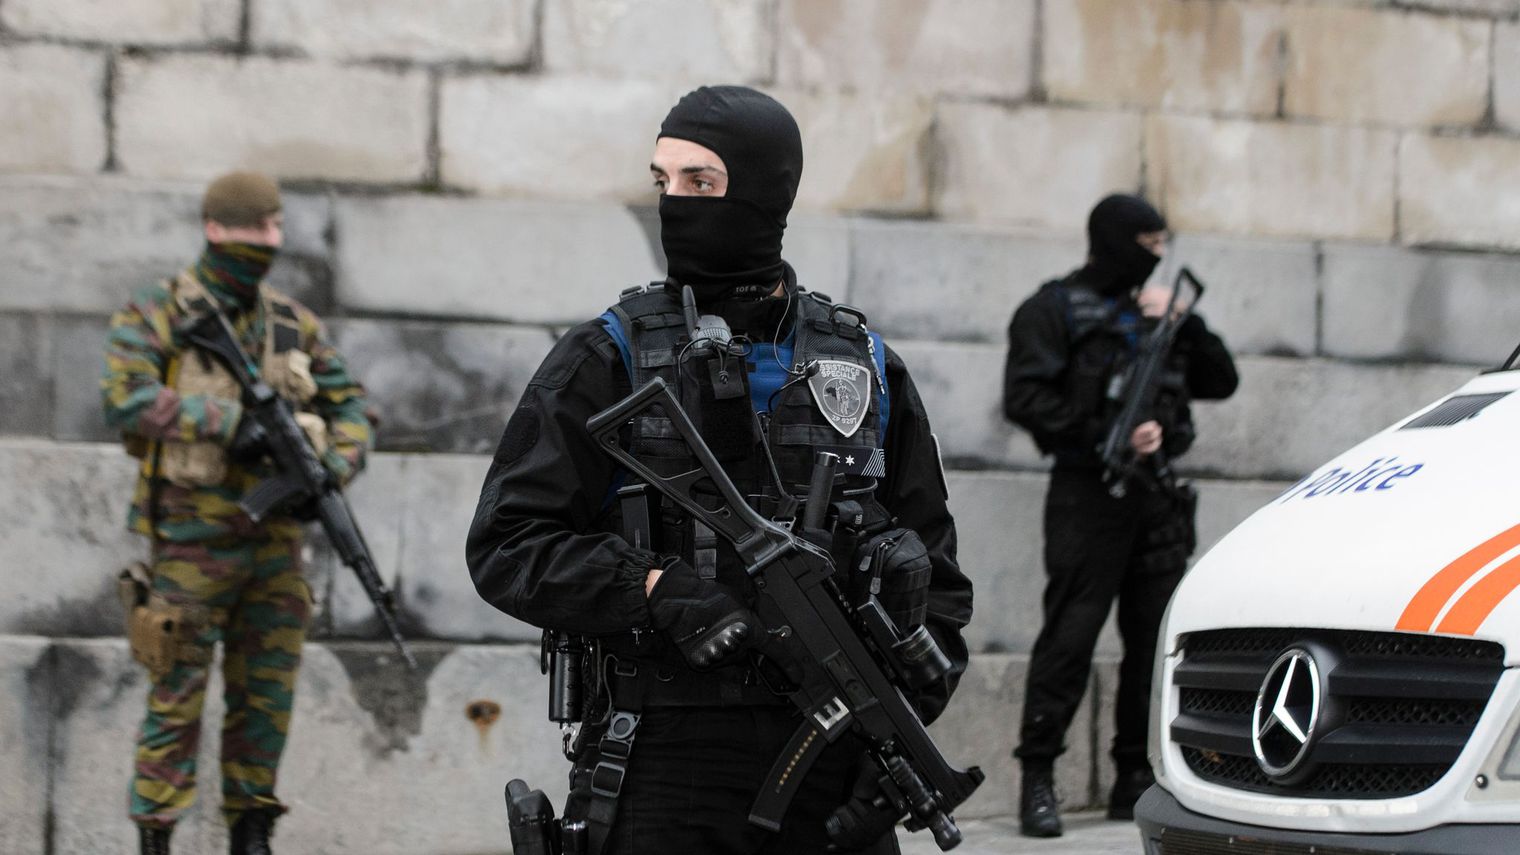 أوروبا تستنفر قواتها لمواجهة تهديدات كيماوية من داعش